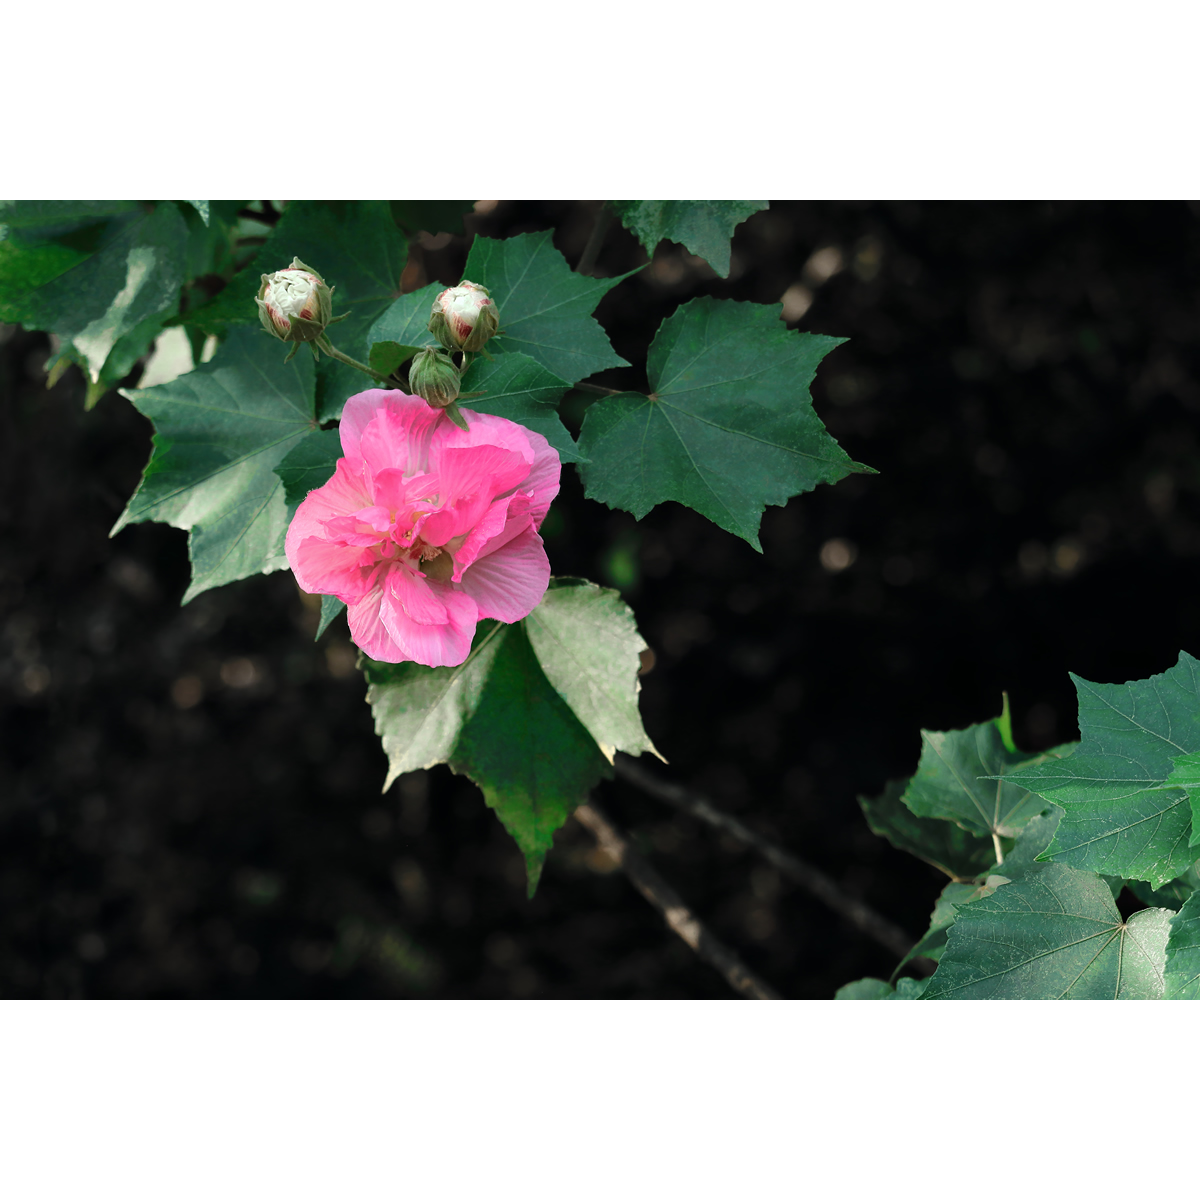 原创高清摄影作品/花卉-粉色木芙蓉/木槿花(2张) 作业素材图片